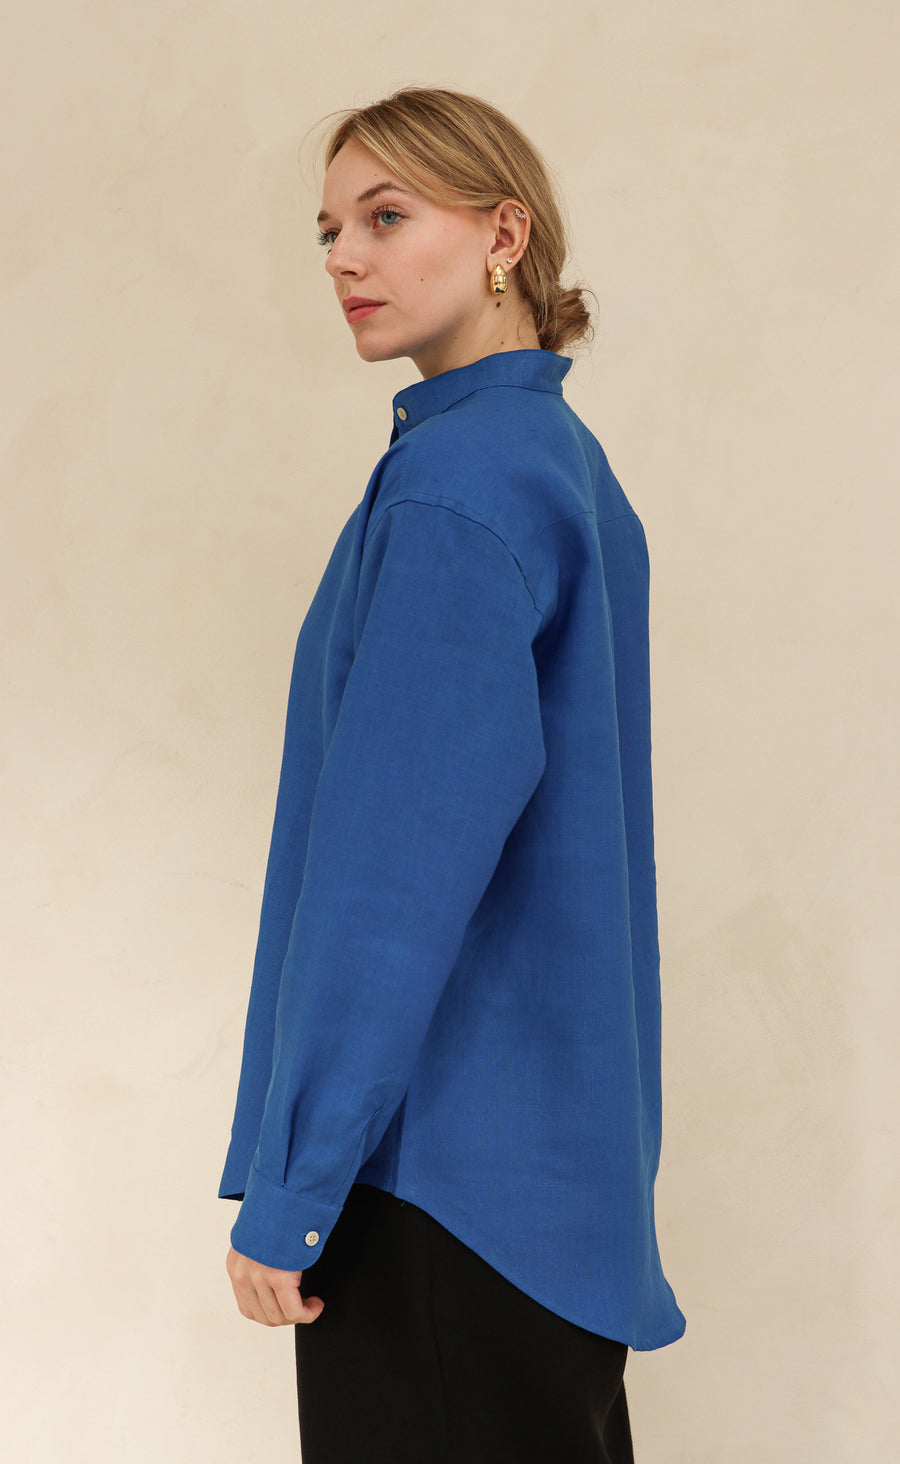 The Friend - Wayward Fit Tunic - Cobalt Blue 100% Linen